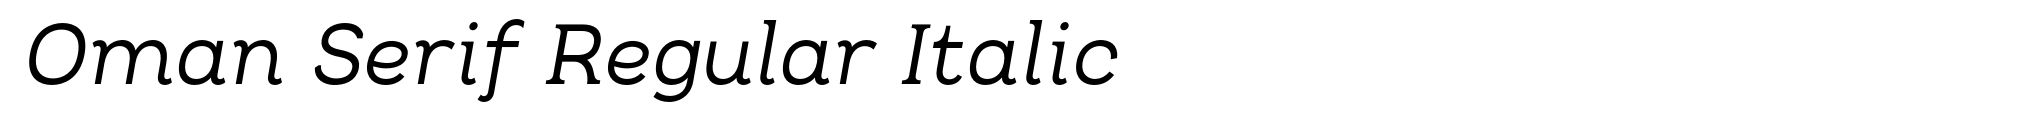 Oman Serif Regular Italic image